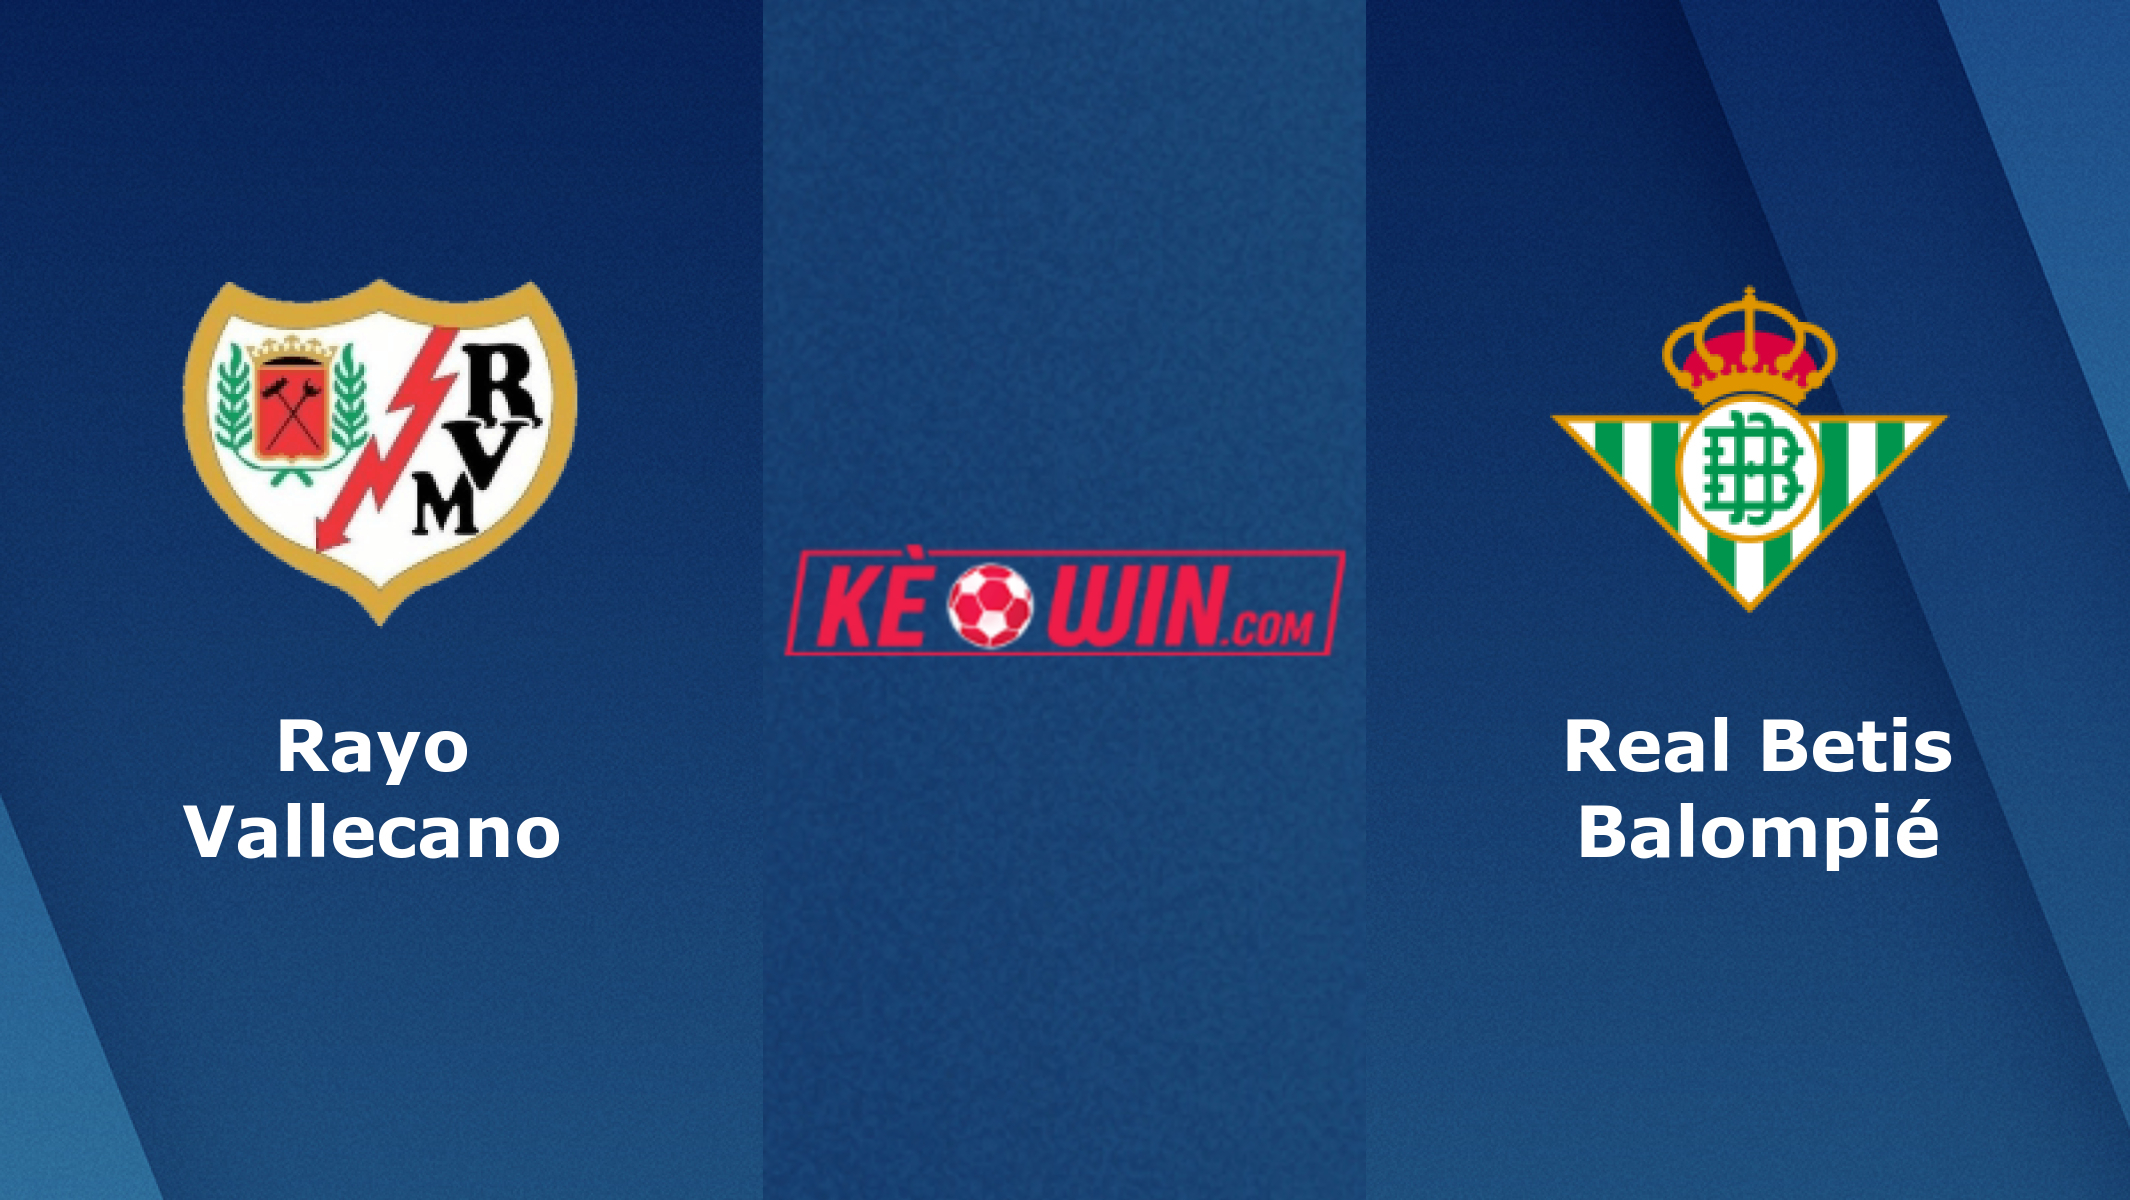 Rayo Vallecano vs Real Betis – Soi kèo bóng đá 20h00 09/01/2022 – VĐQG Tây Ban Nha